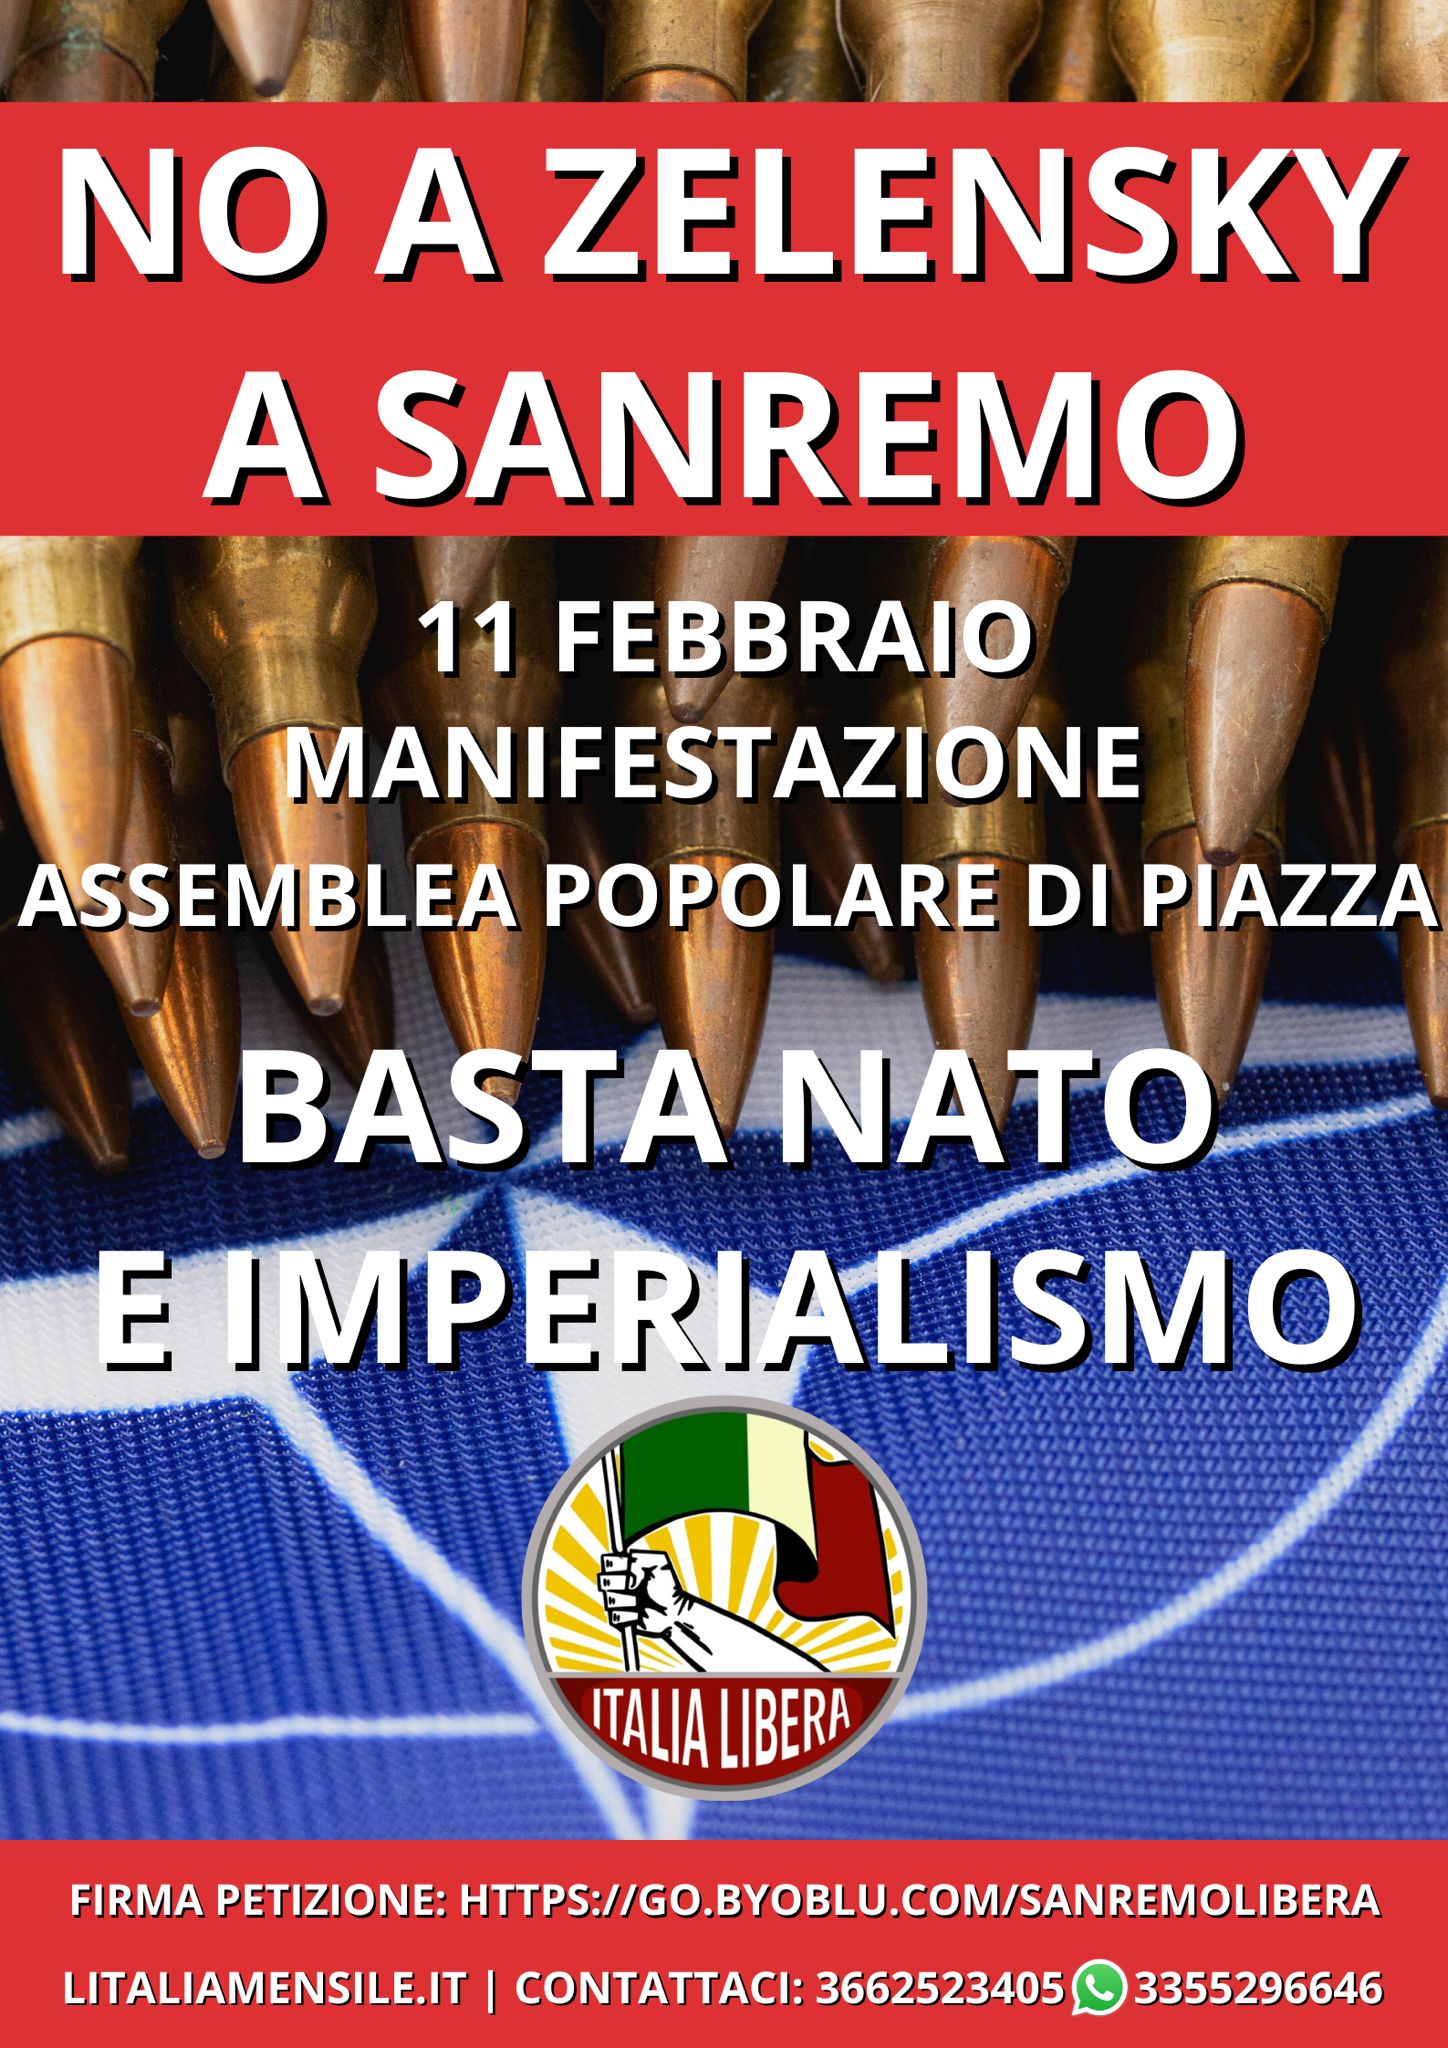 MAURIZIO PINTO (ITALIA LIBERA): SANREMO DISSIDENTE SIAMO NOI!